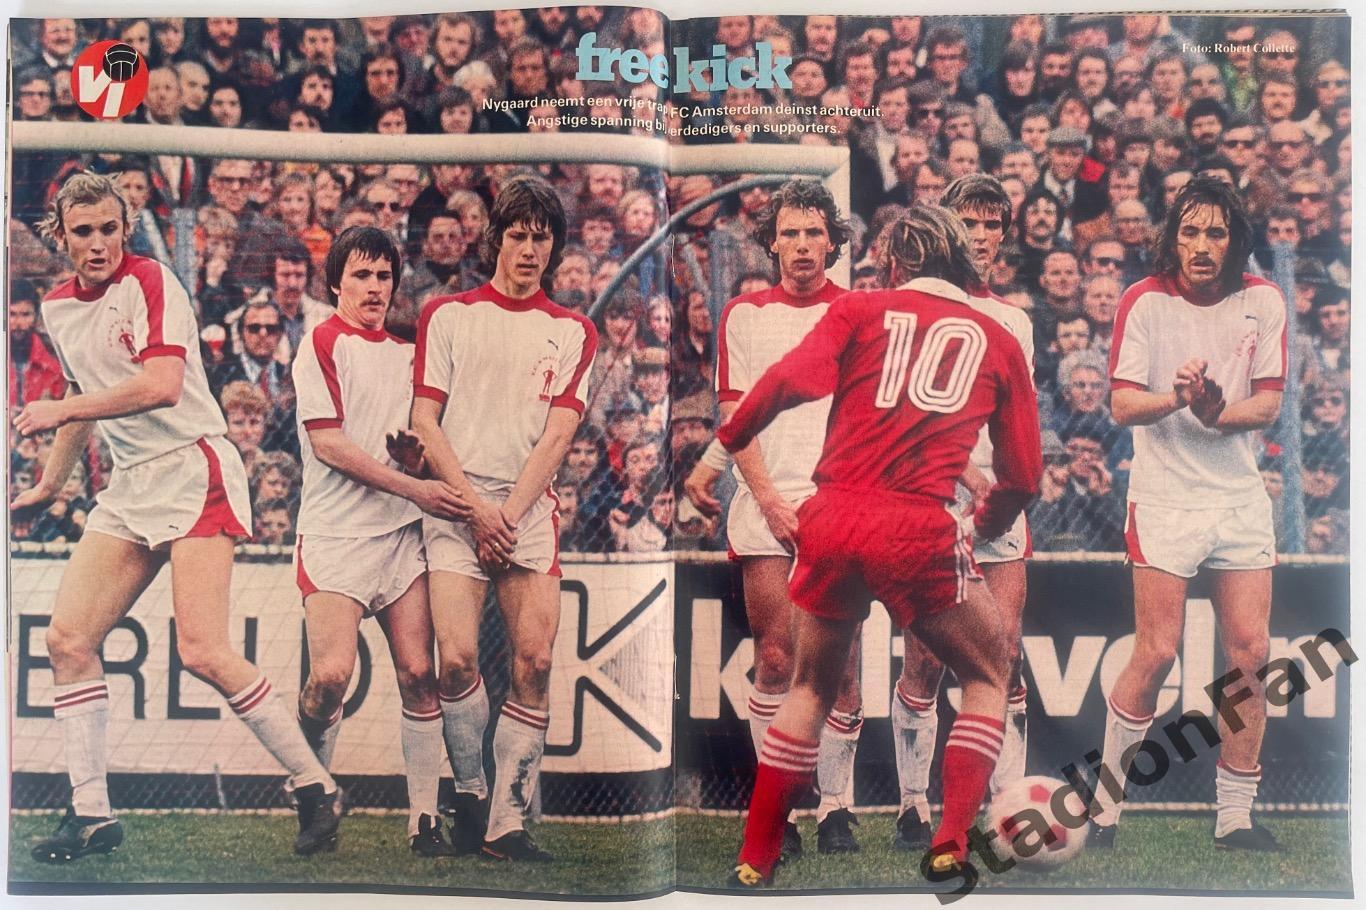 Журнал Voetbal nr.24 - 1977 год. 5